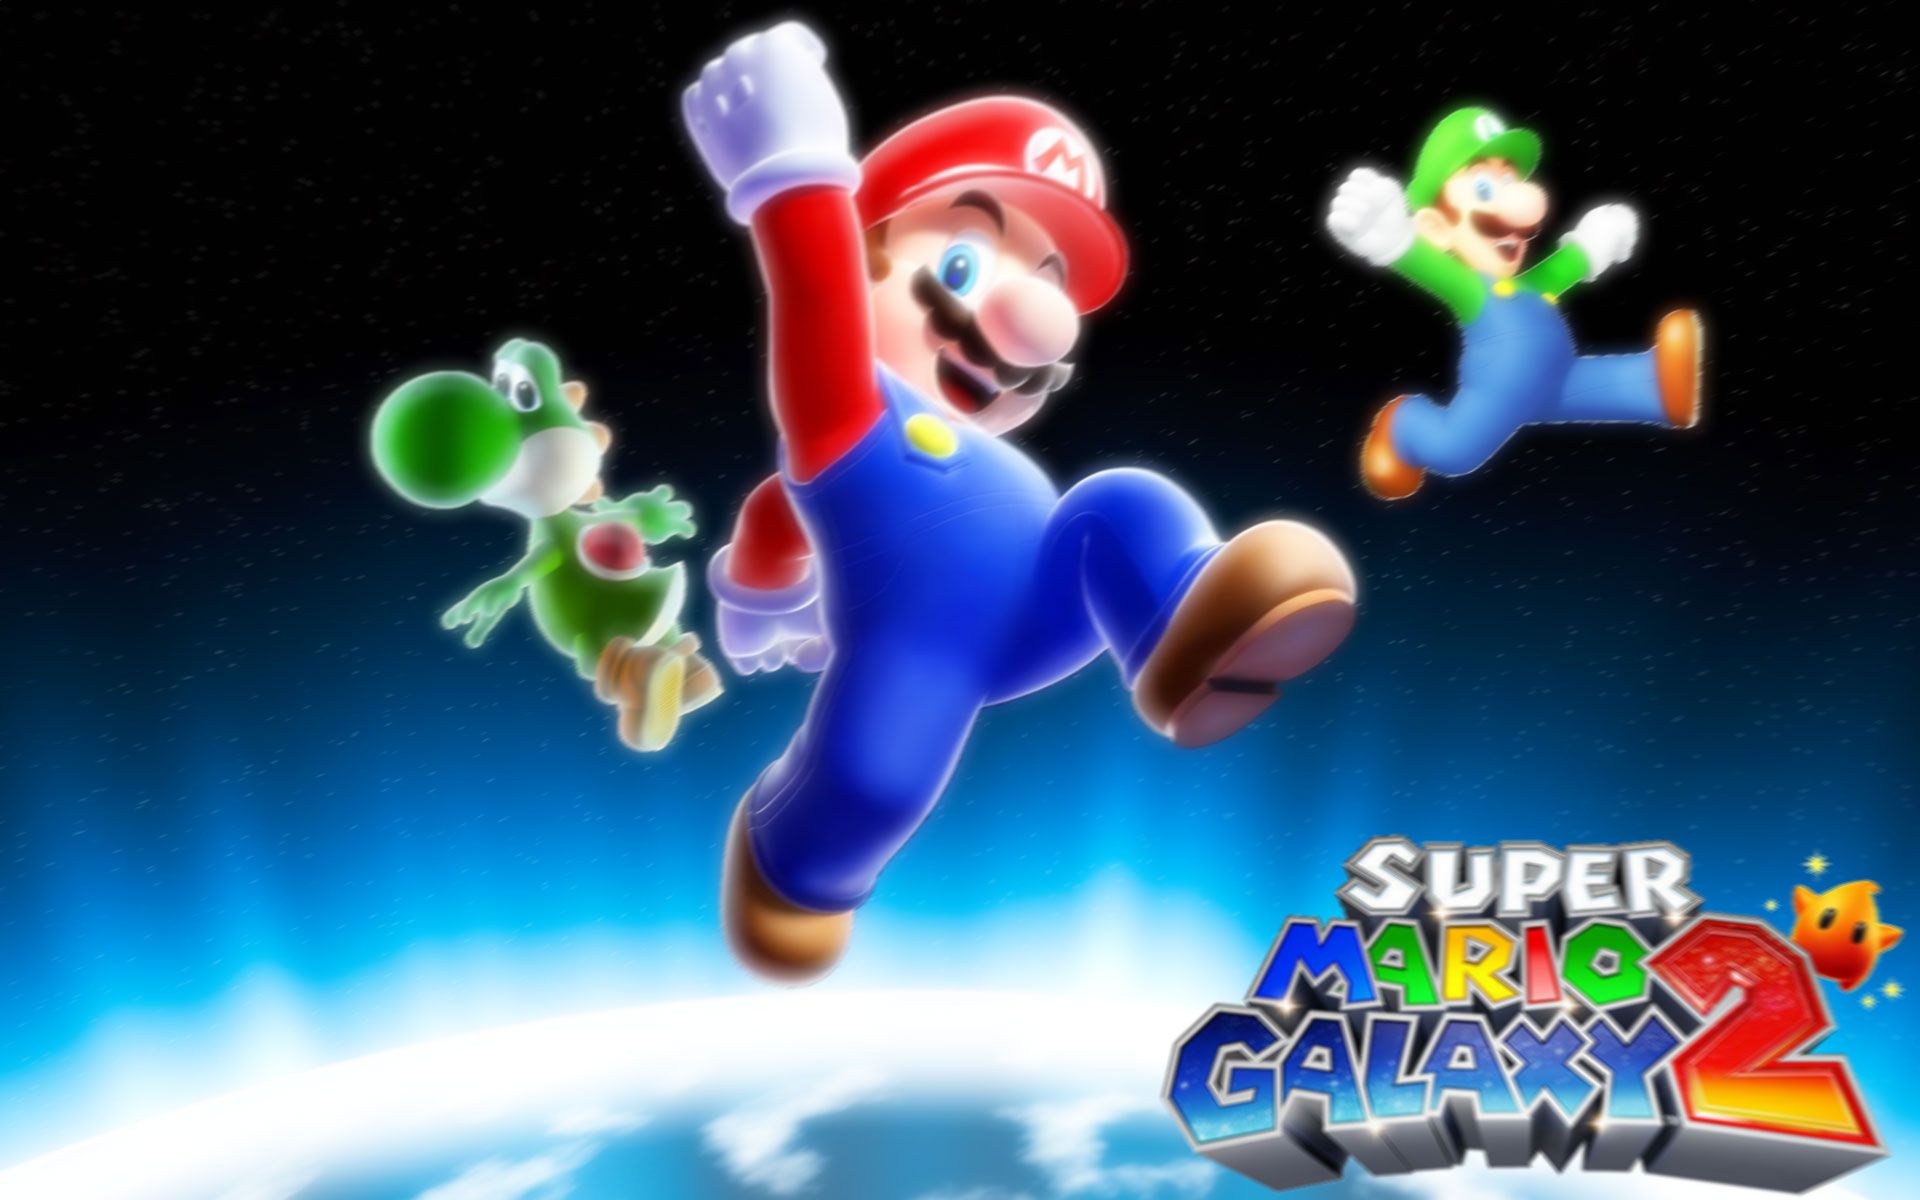 Super Mario Galaxy 2 Background Darkness. Darkness Wallpaper, Army Darkness Wallpaper and Darkness Hope Wallpaper